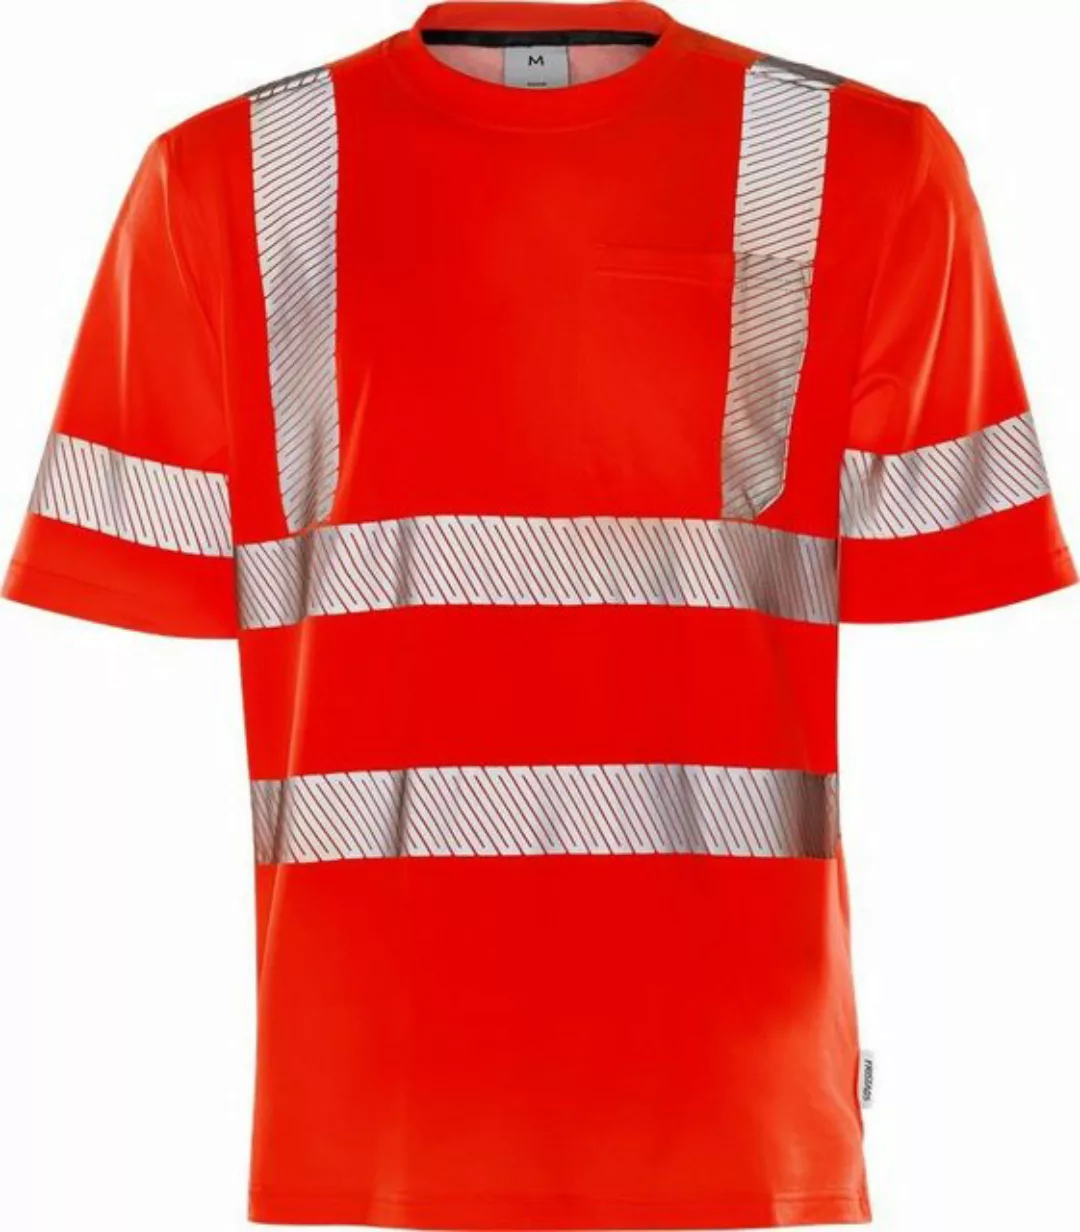 Fristads Warnschutz-Shirt High Vis Jacke Kl. 3 4794 Th günstig online kaufen